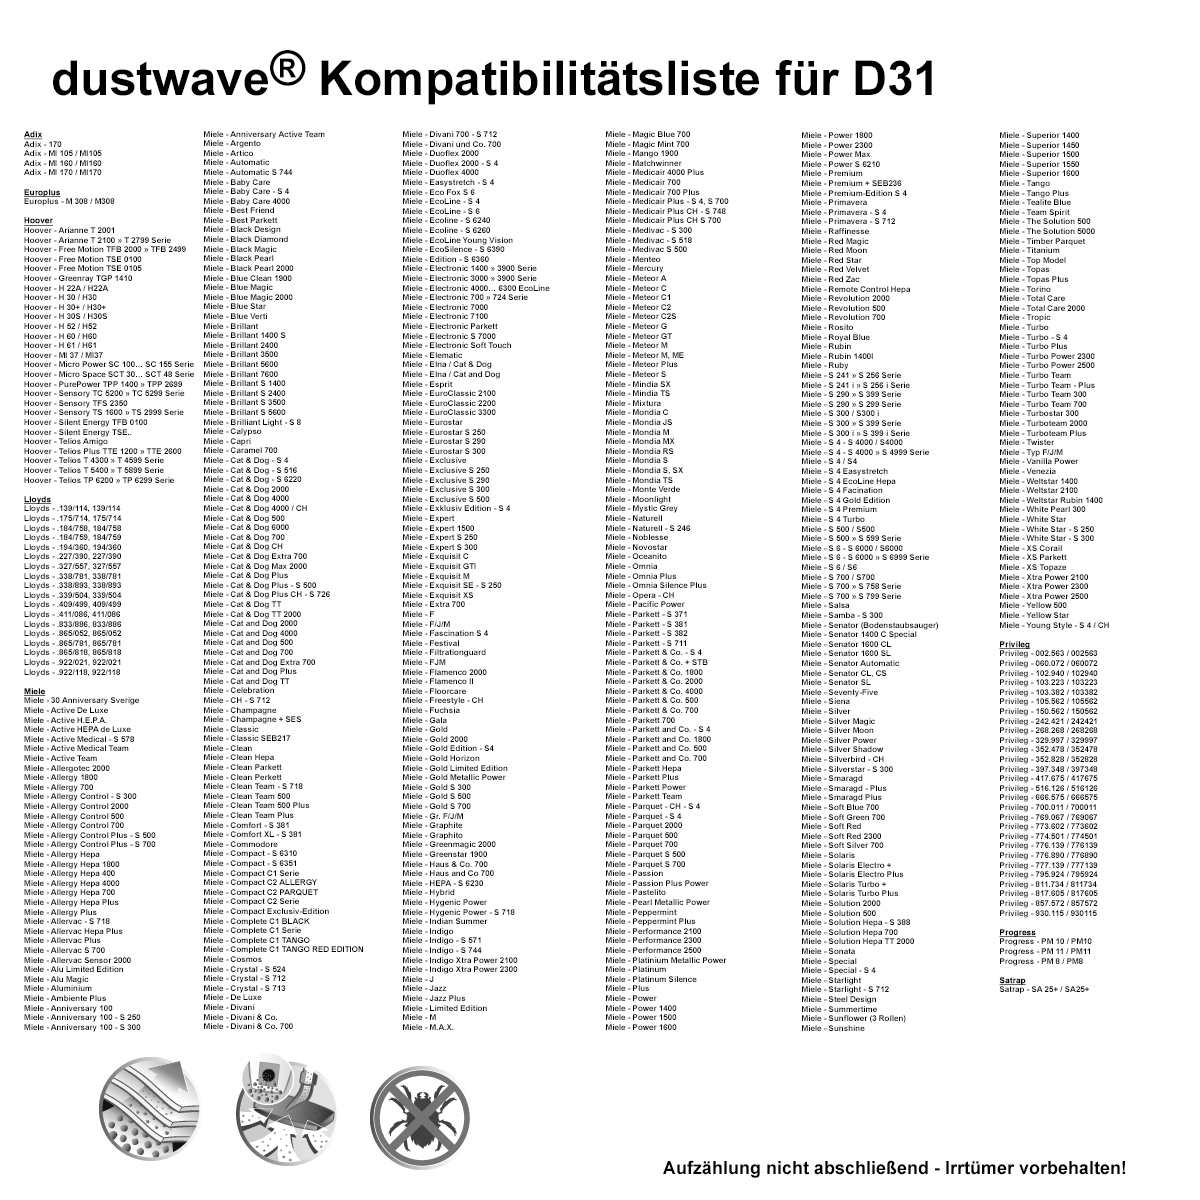 Dustwave® 5 Staubsaugerbeutel für Miele S5111 / S 5111 - hocheffizient, mehrlagiges Mikrovlies mit Hygieneverschluss - Made in Germany